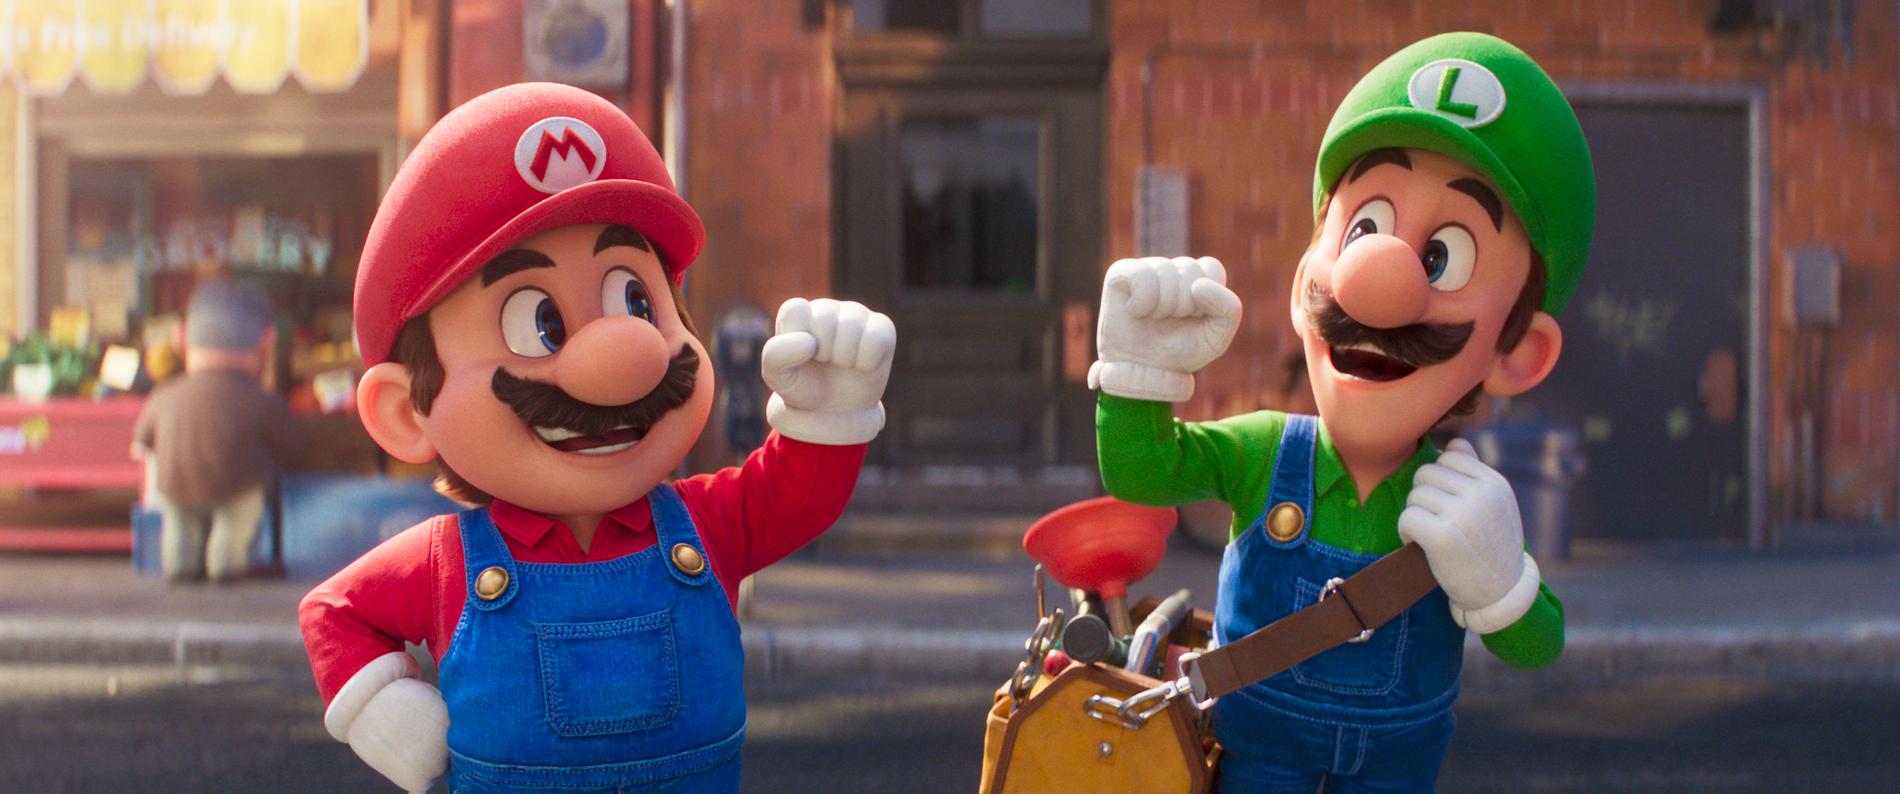 Mario och Luigi i ”The Super Mario Bros movie”.